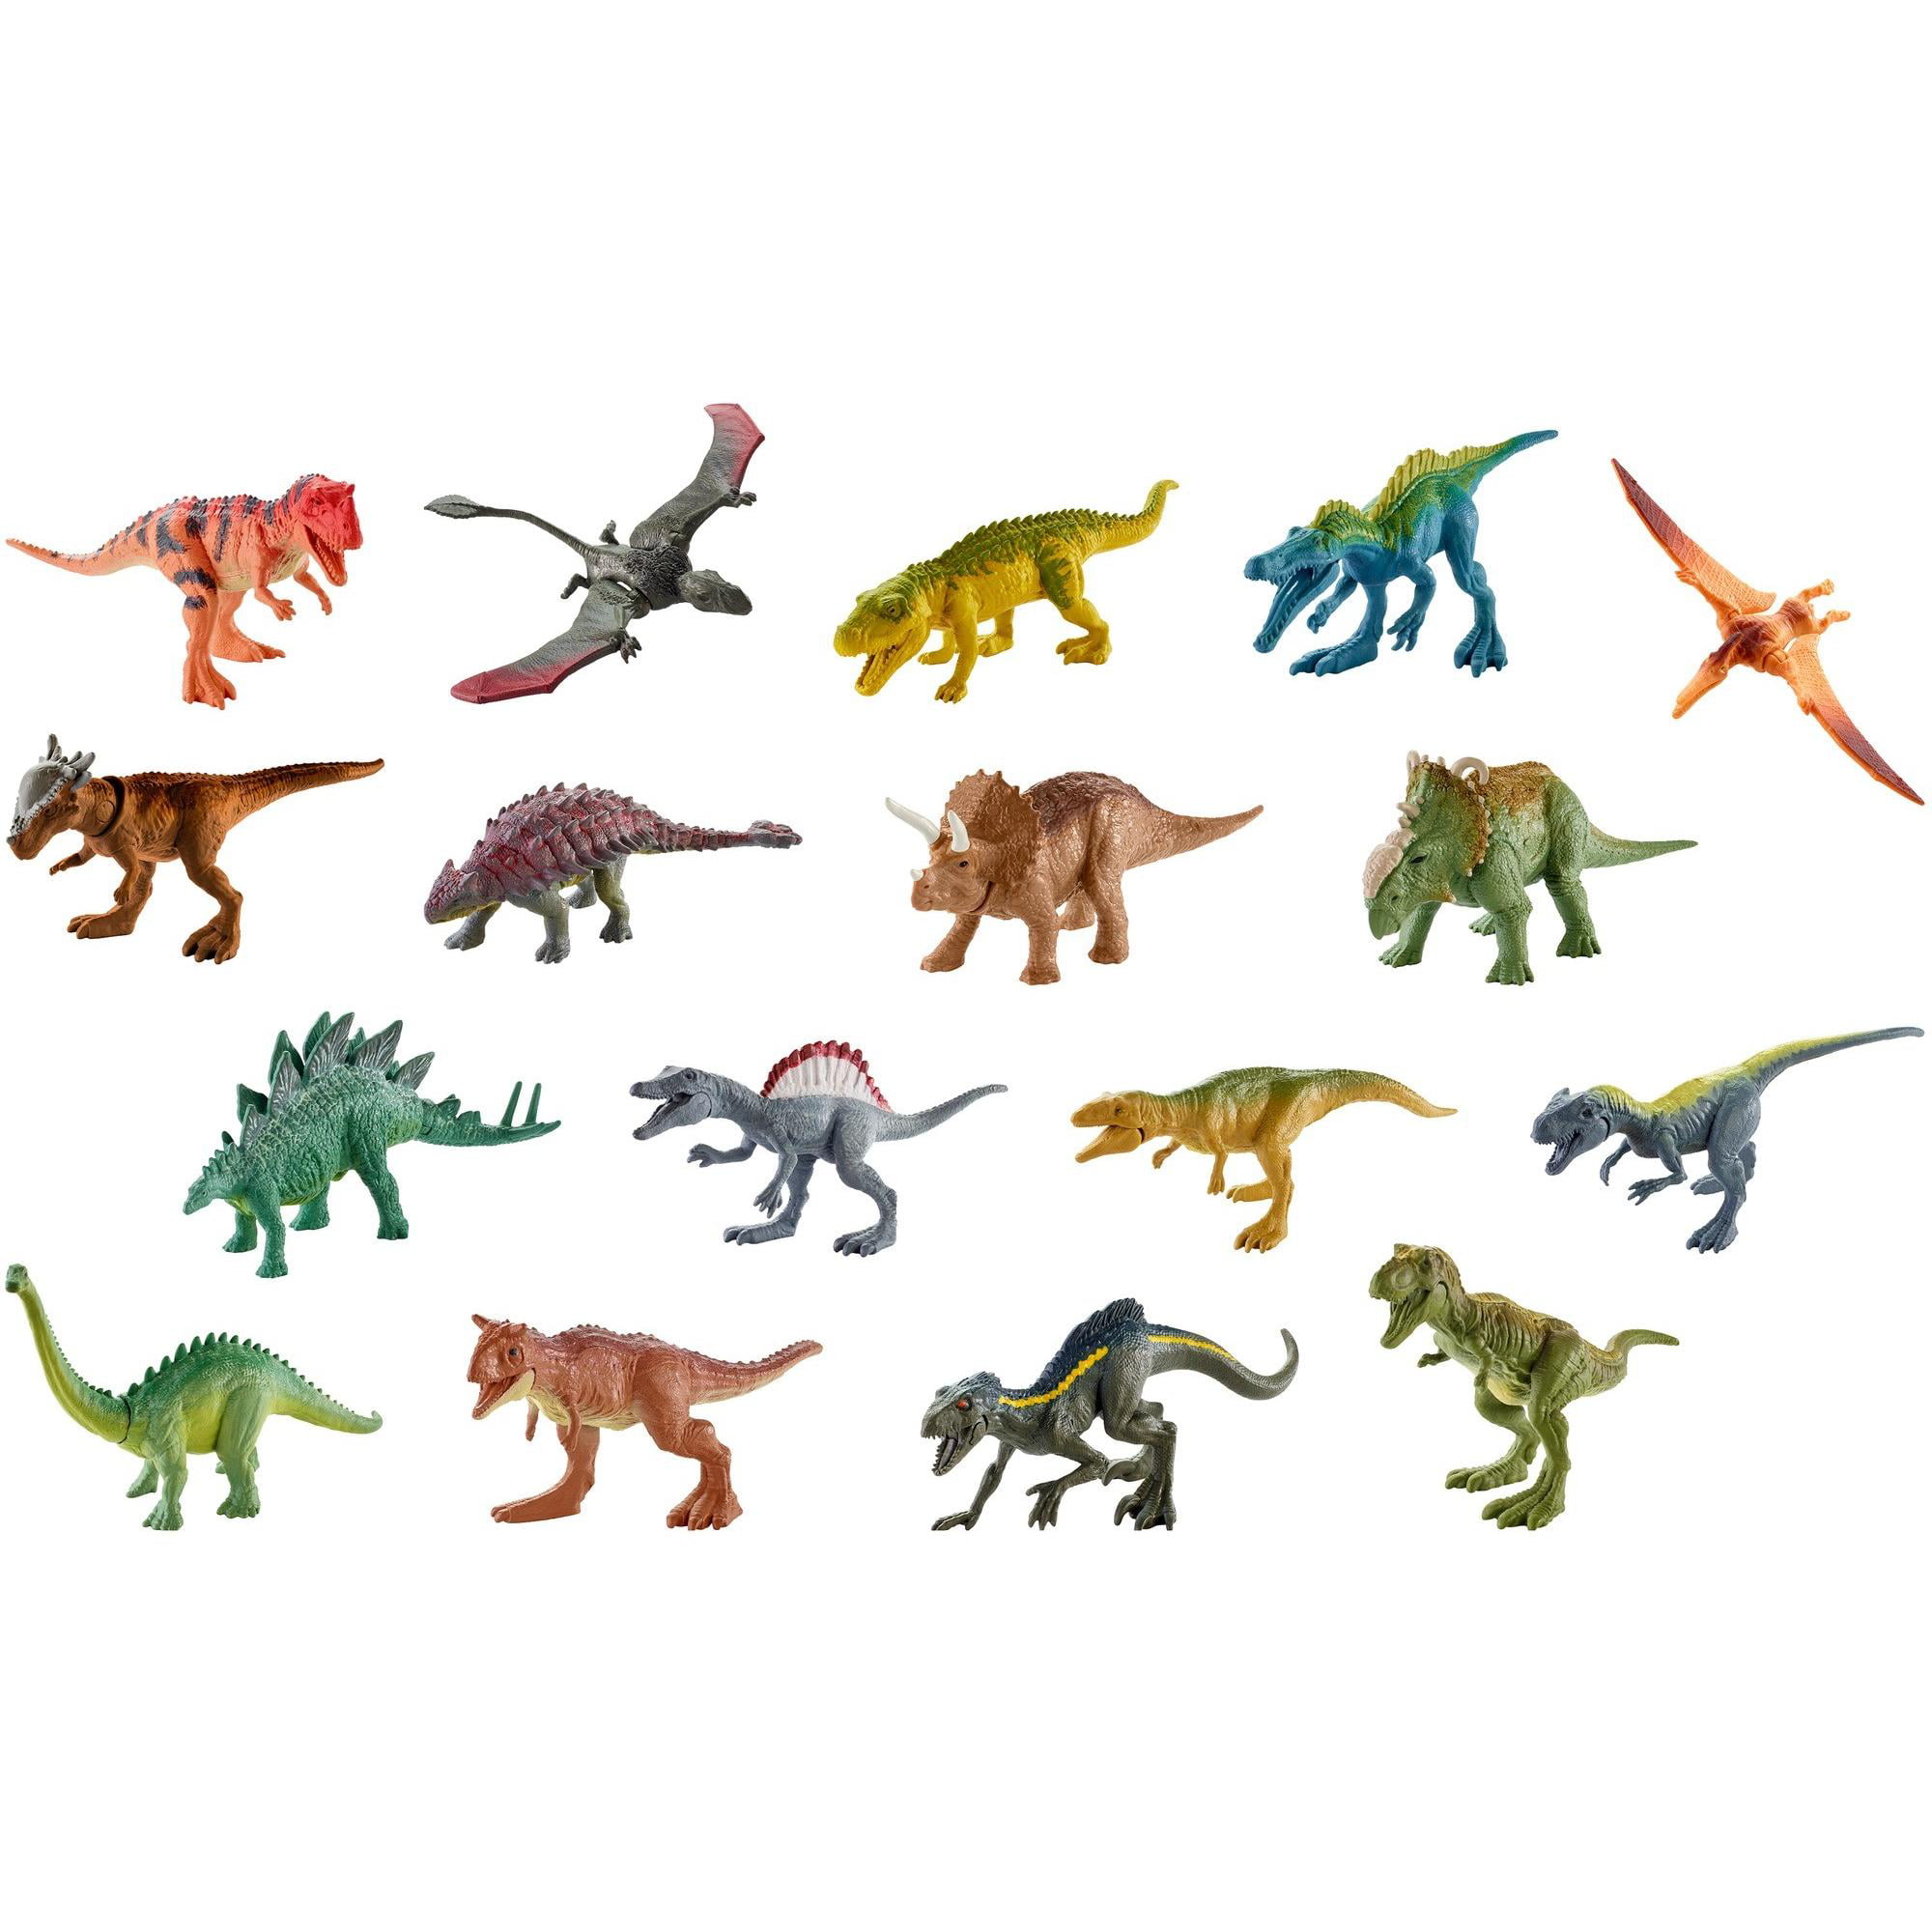 Динозавры сборник. Mattel Jurassic World мини динозавров. Фигурки динозавров Jurassic World Mattel. Mattel Jurassic World fml69 мини-динозавры. Динозавры Маттел мир Юрского периода 3.